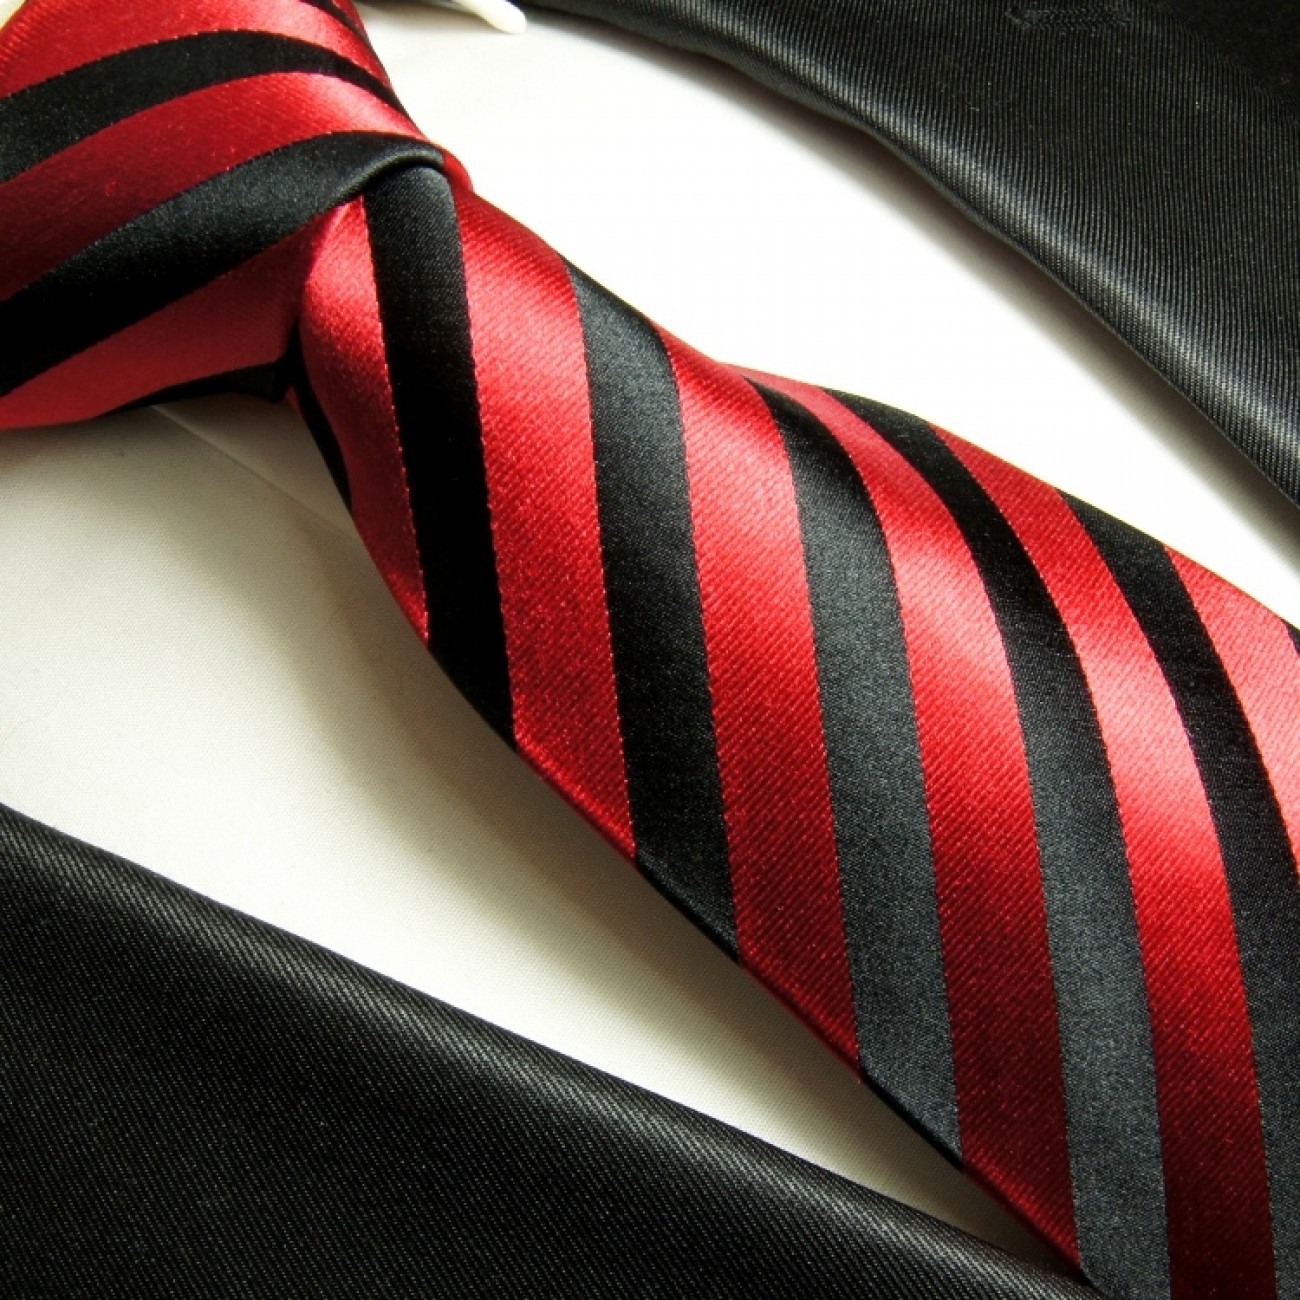 Krawatte rot schwarz Seide 452 | JETZT BESTELLEN - Paul Malone Shop